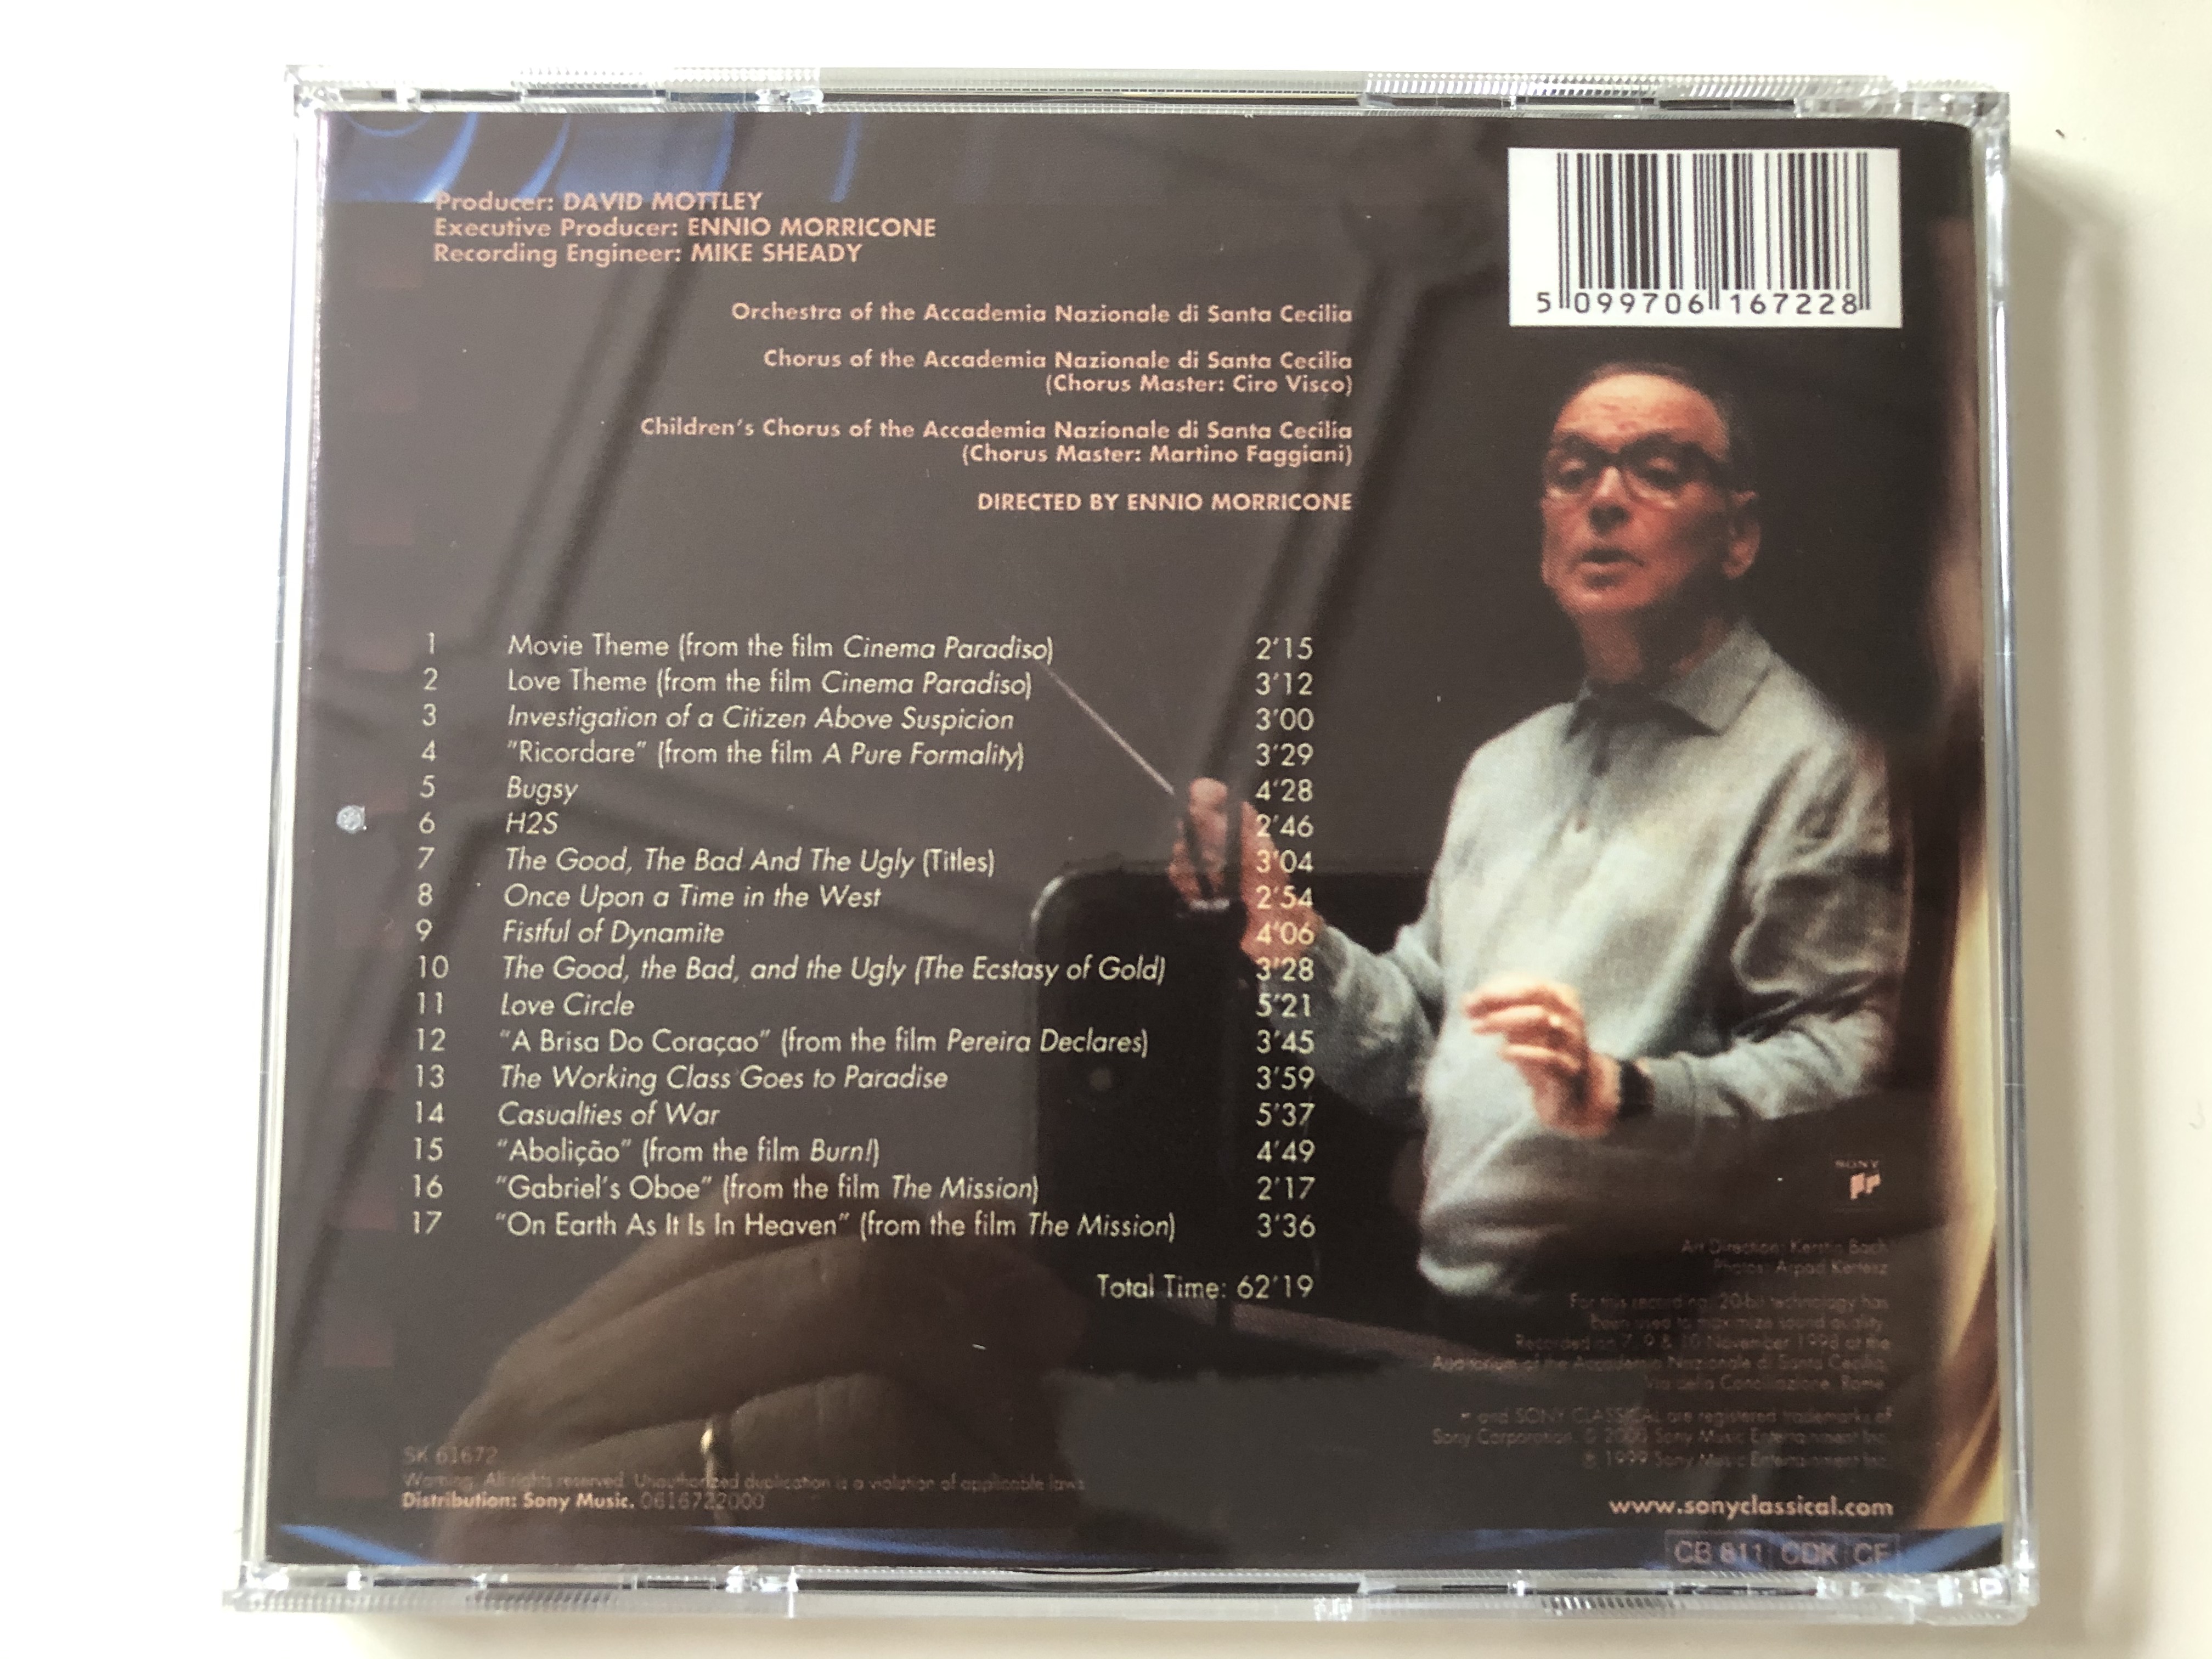 cinema-concerto-ennio-morricone-at-santa-cecilia-orchestra-and-chorus-of-the-accademia-nazionale-di-santa-cecilia-sony-classical-audio-cd-1999-sk-61672-5-.jpg